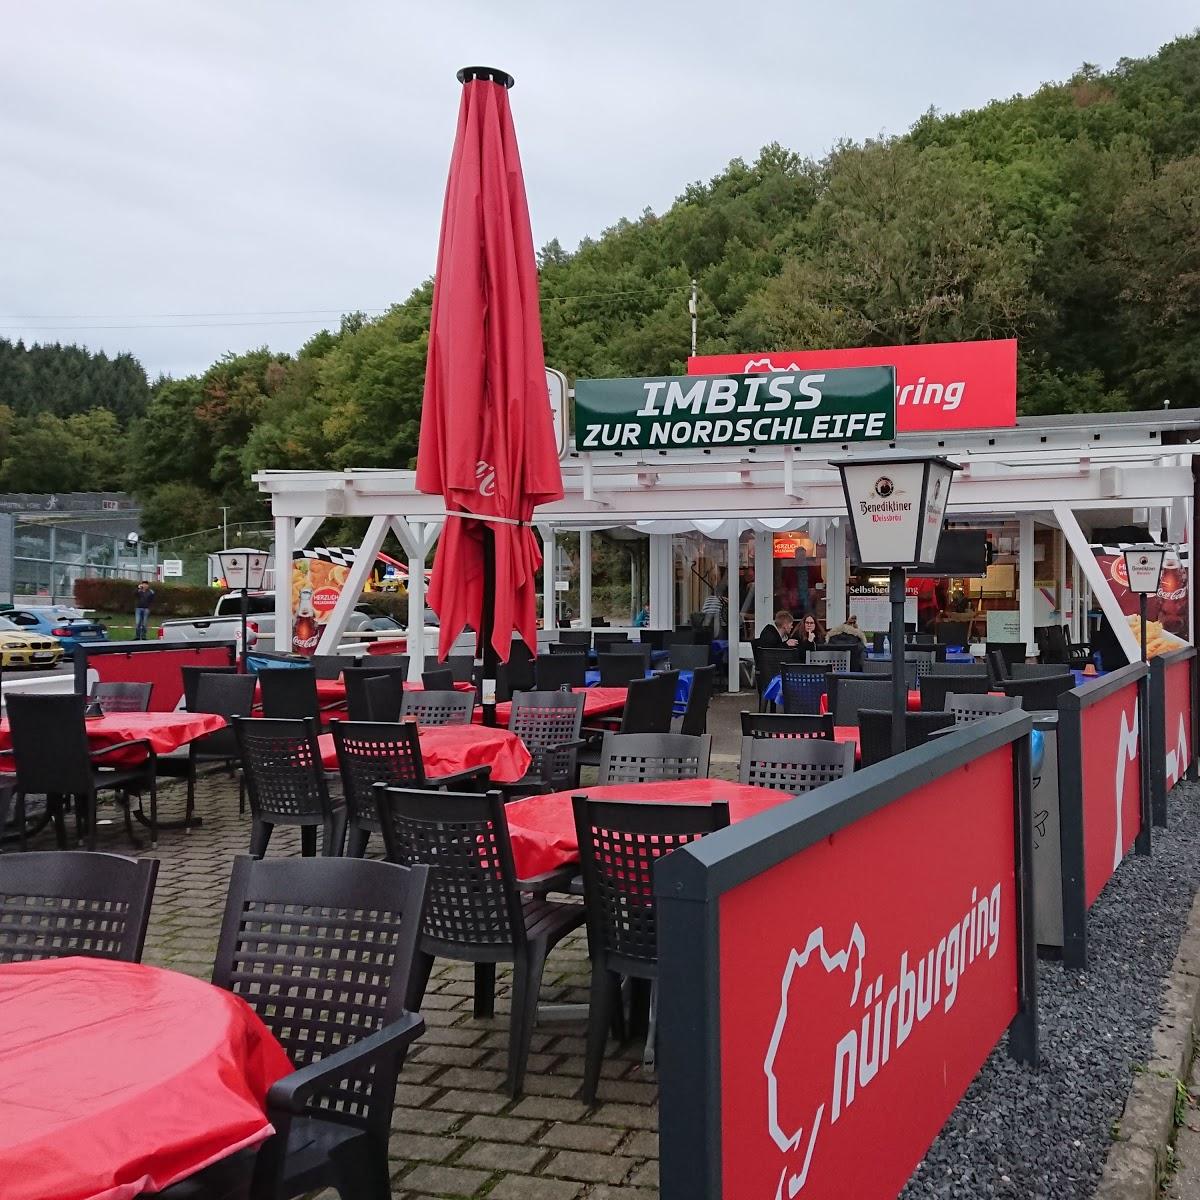 Restaurant "Café Zur Nordschleife" in Adenau